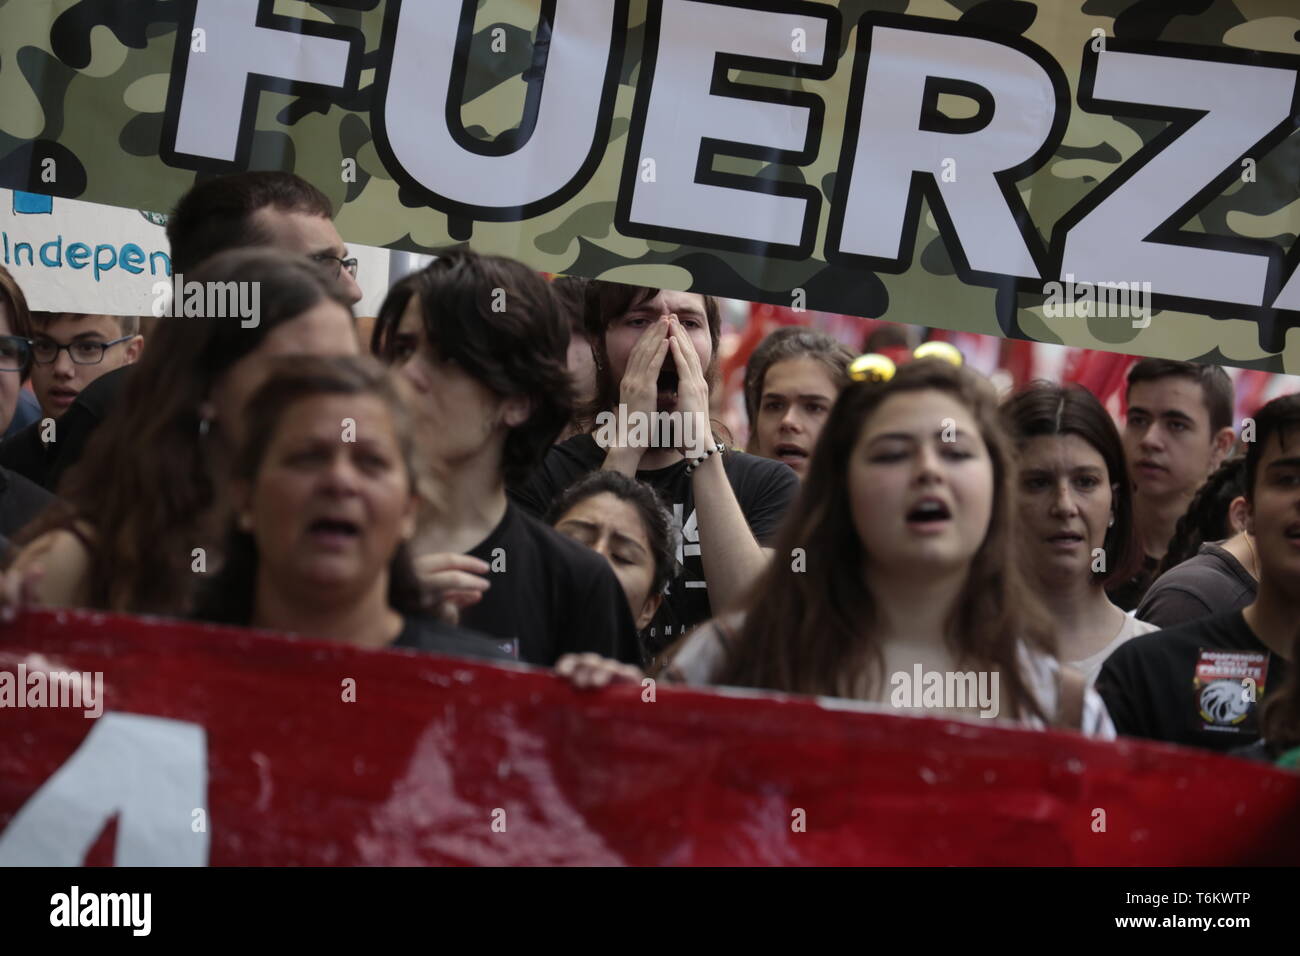 Die Demonstranten werden gesehen, riefen Parolen während der Demonstration. Tausende von Demonstranten auf den Internationalen Tag der Arbeit zeigen, einberufen von der Mehrheit Gewerkschaften UGT und CCOO Politiken und den Abbau der Arbeitslosigkeit in Spanien zu fordern, gegen die Unsicherheit der Beschäftigung und der Arbeitsrechte. Politiker der PSOE und der podemos haben an der Demonstration teilgenommen. Stockfoto